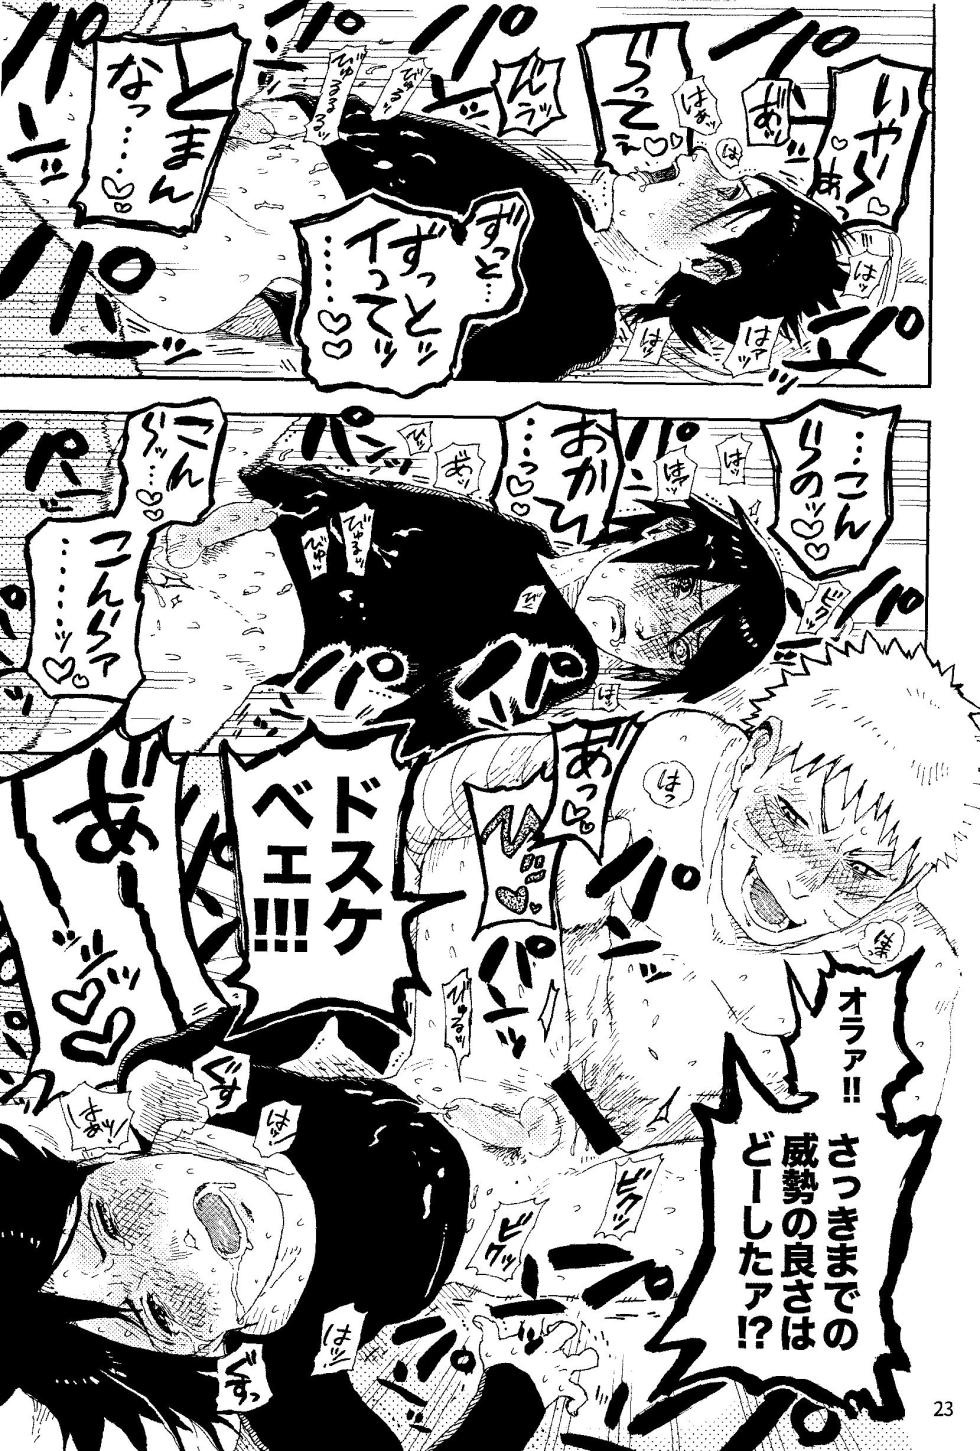 [Mutamuta Land (Mutako)] THE FIRST ep 7.5 (Naruto) - Page 25